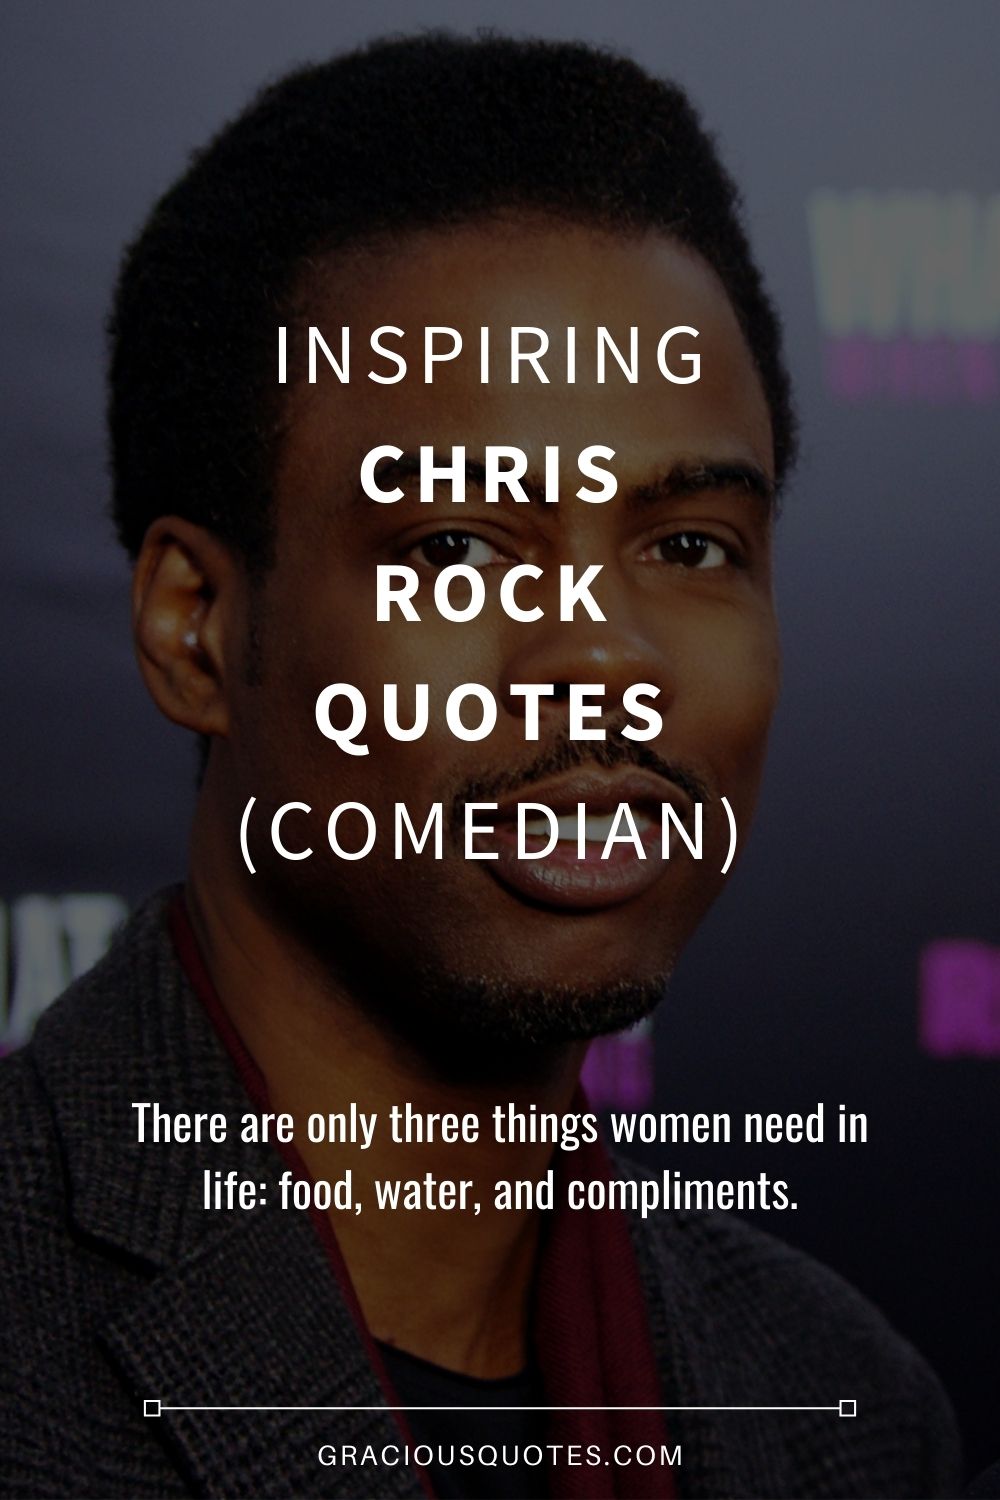 Inspiring Chris Rock Quotes (COMEDIAN) - Gracious Quotes